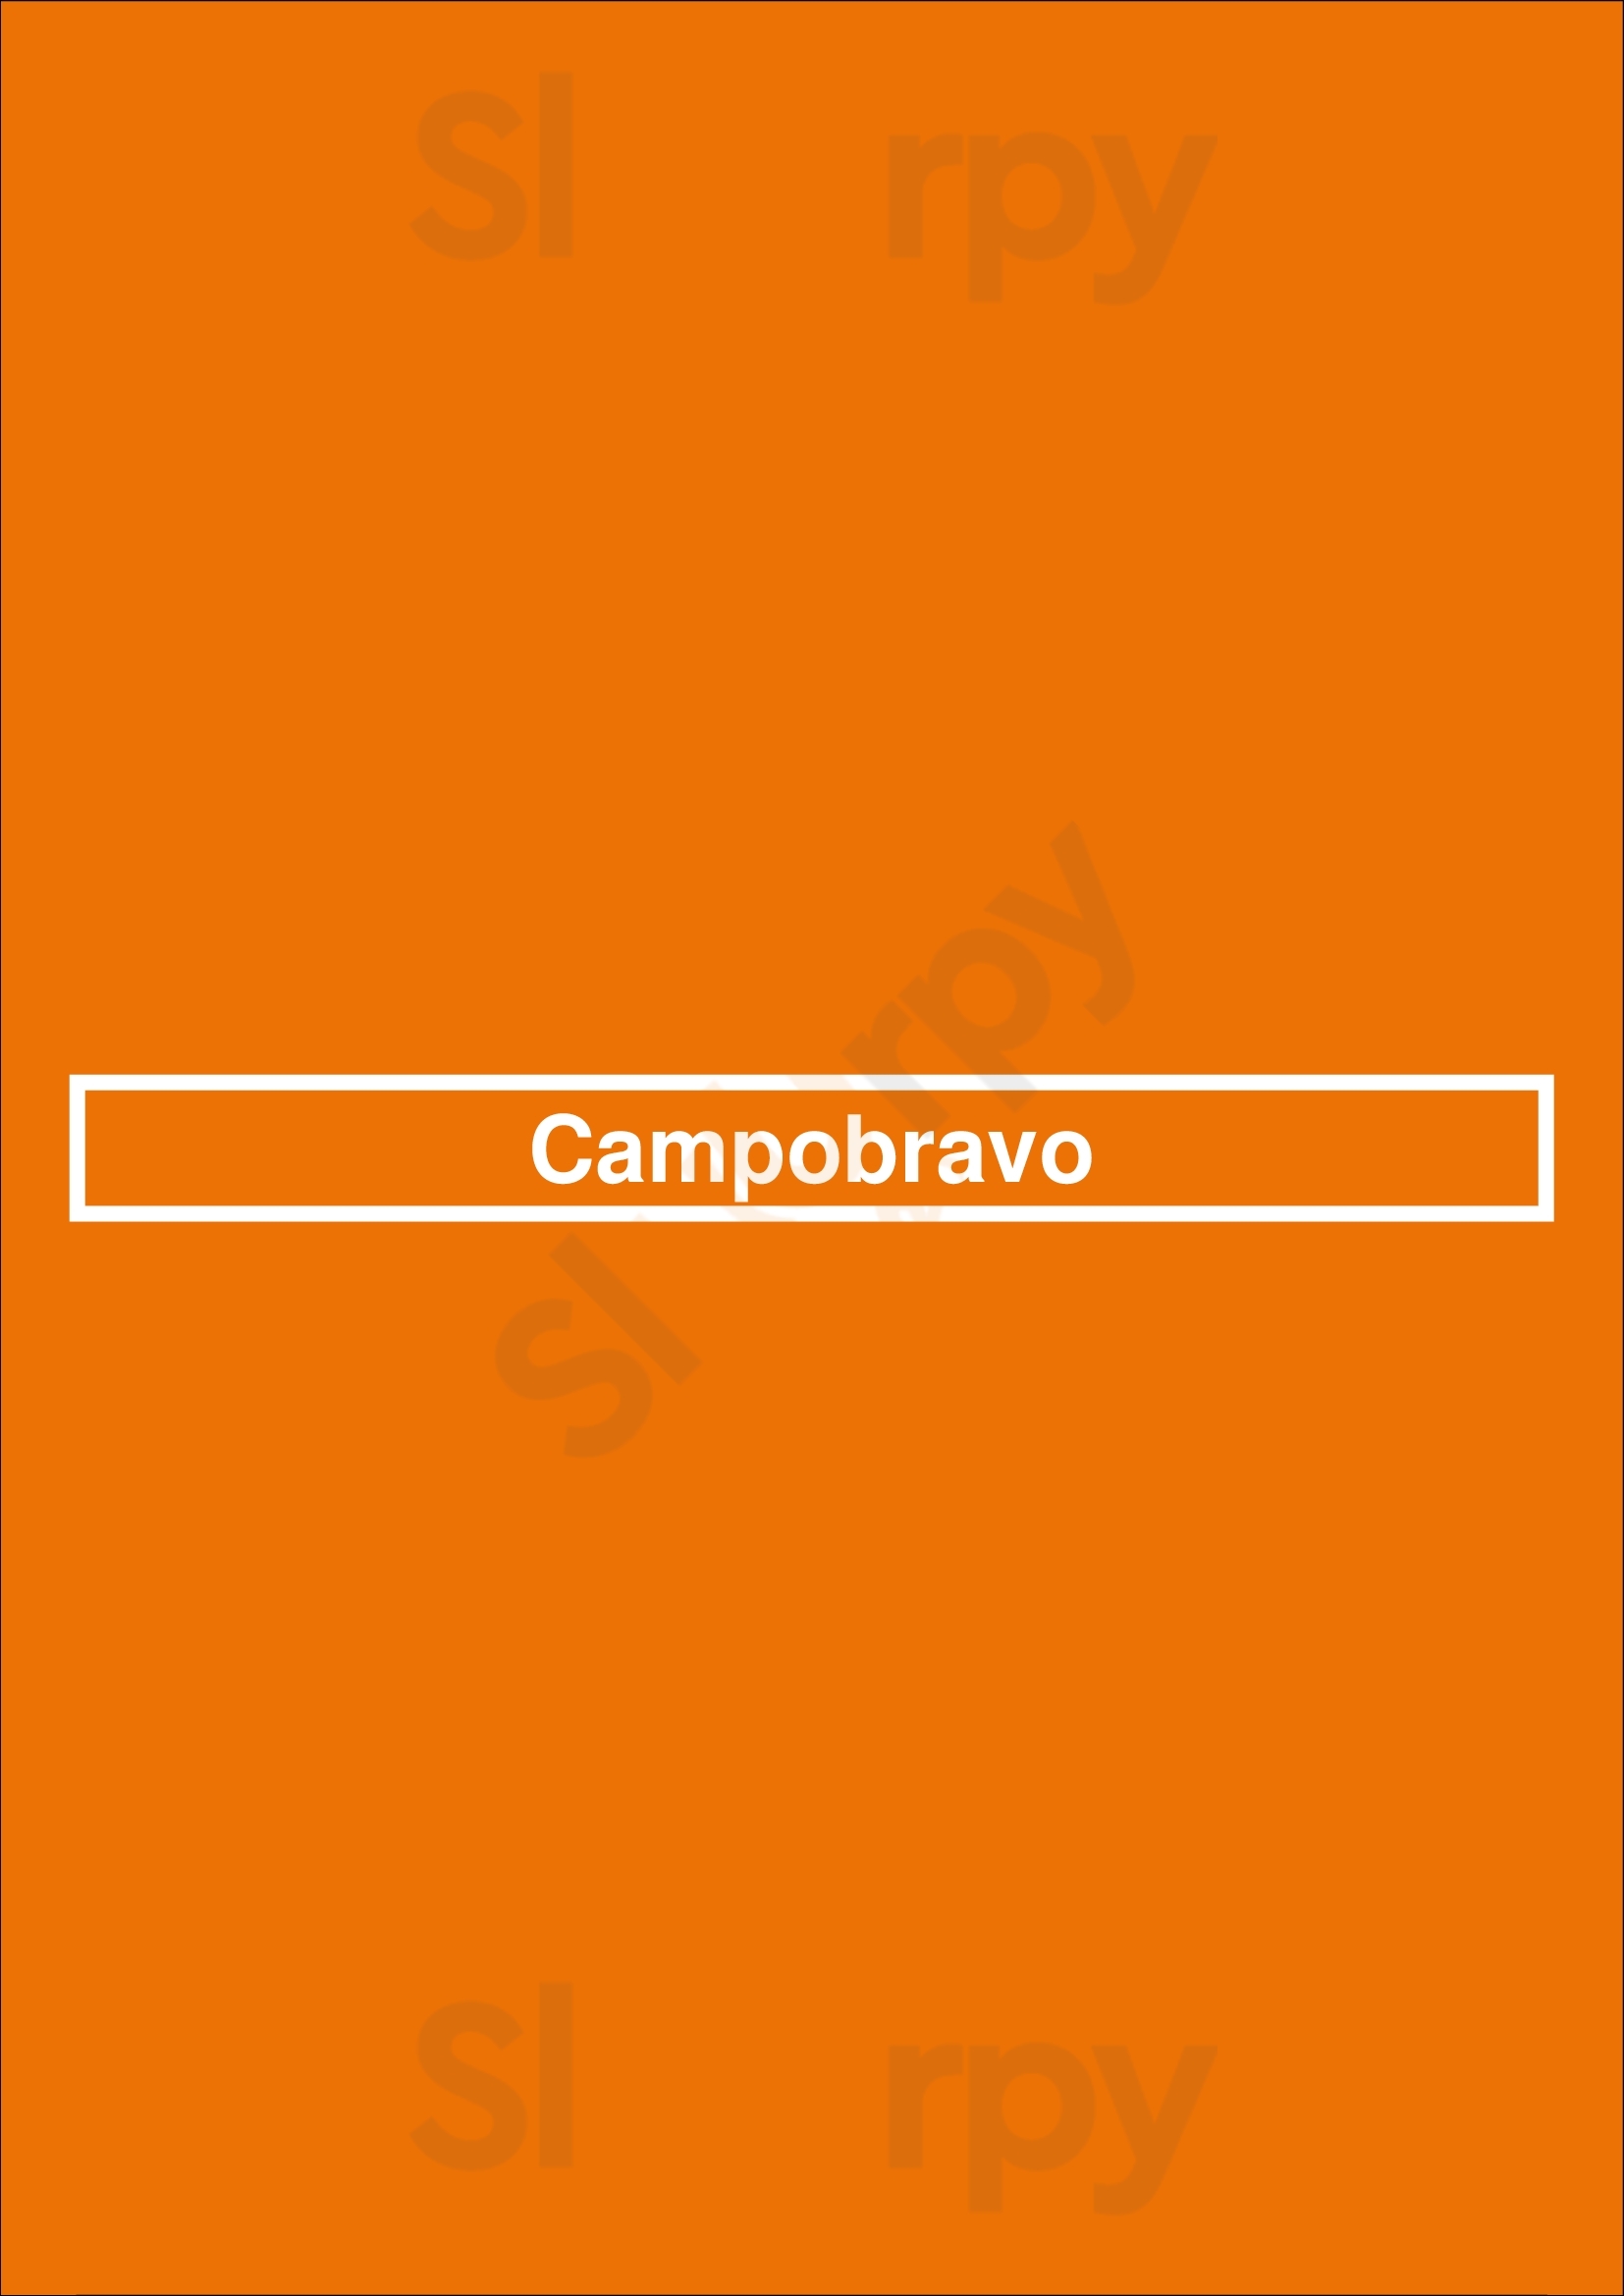 Campobravo Palermo Buenos Aires Menu - 1